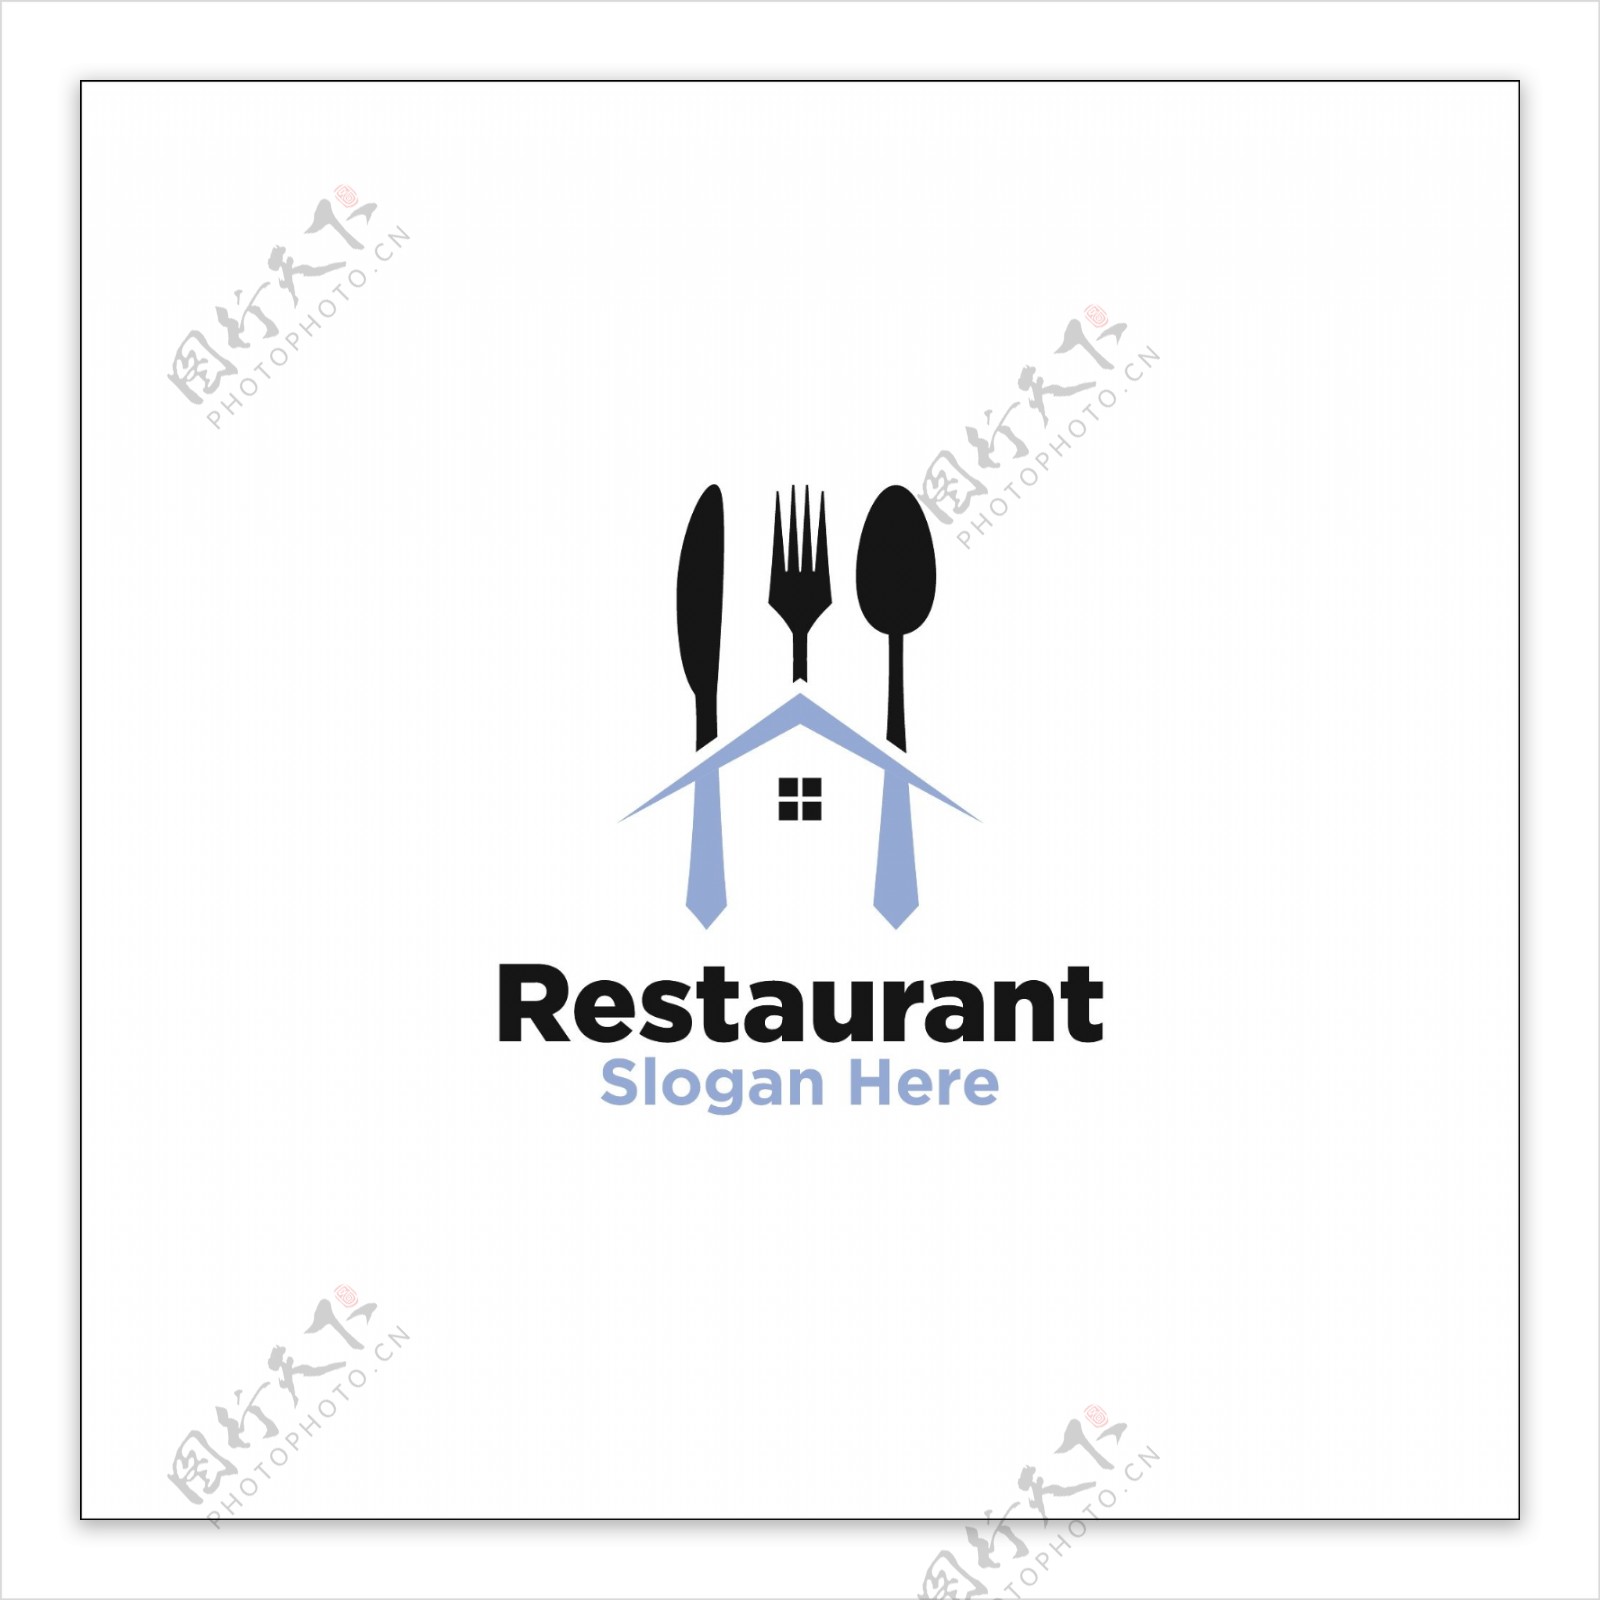 创意餐厅标志设计矢量素材